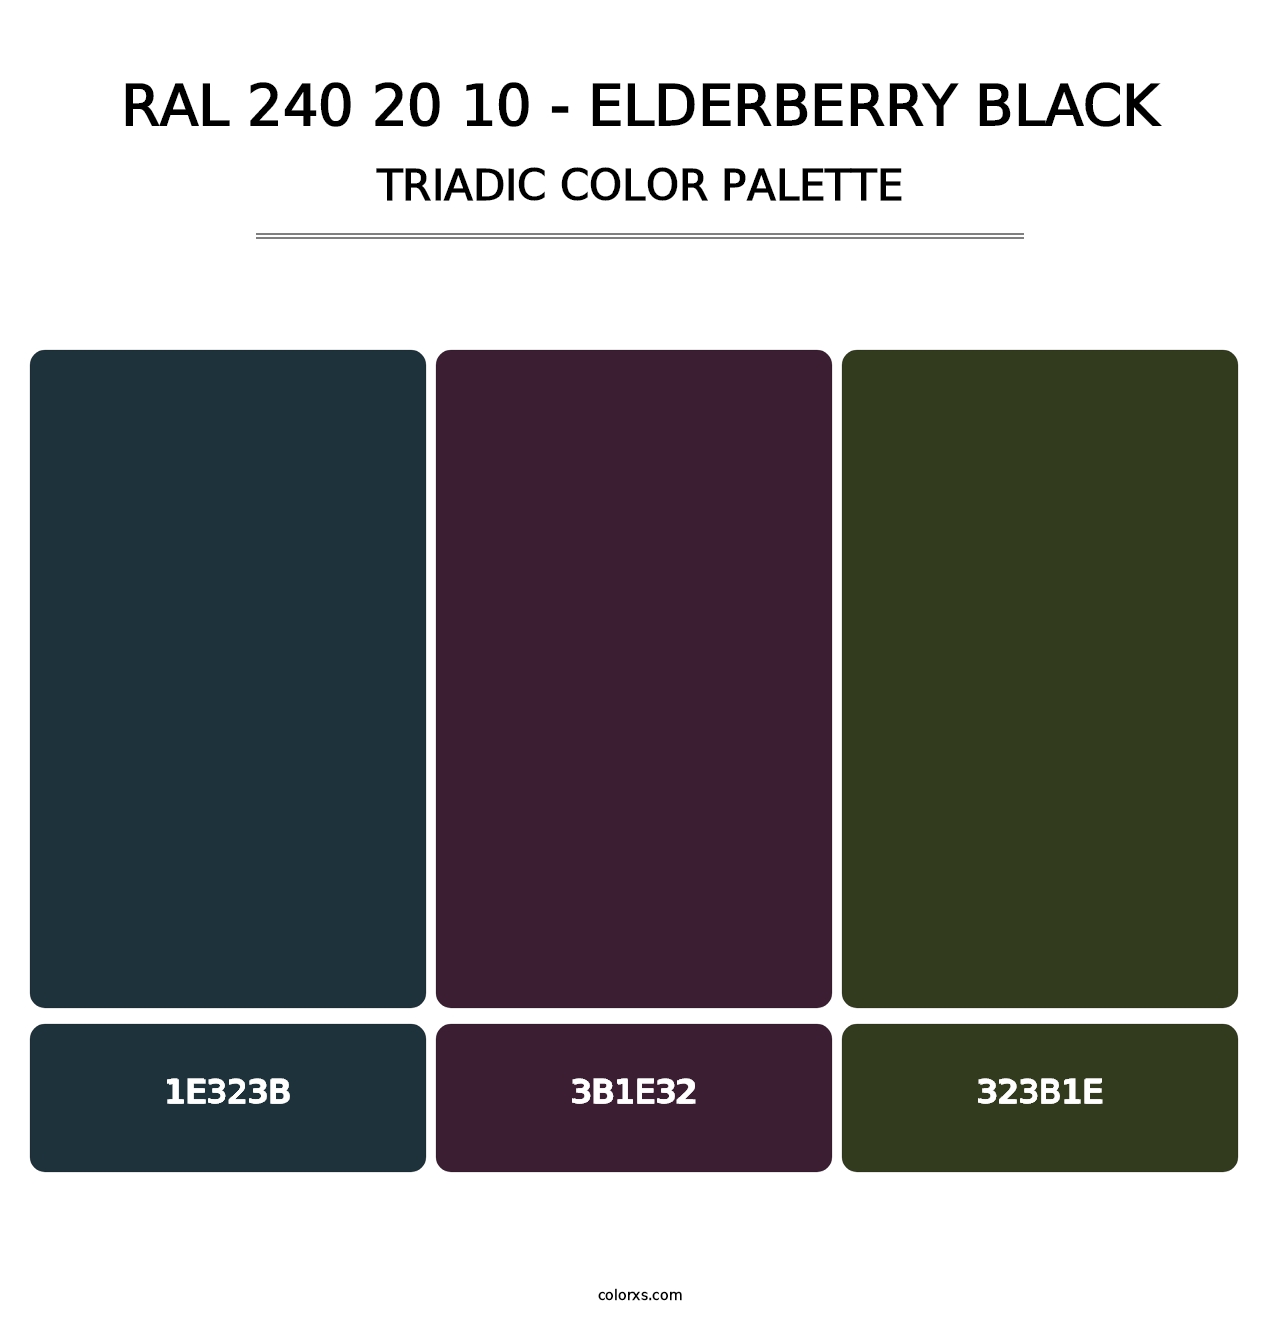 RAL 240 20 10 - Elderberry Black - Triadic Color Palette